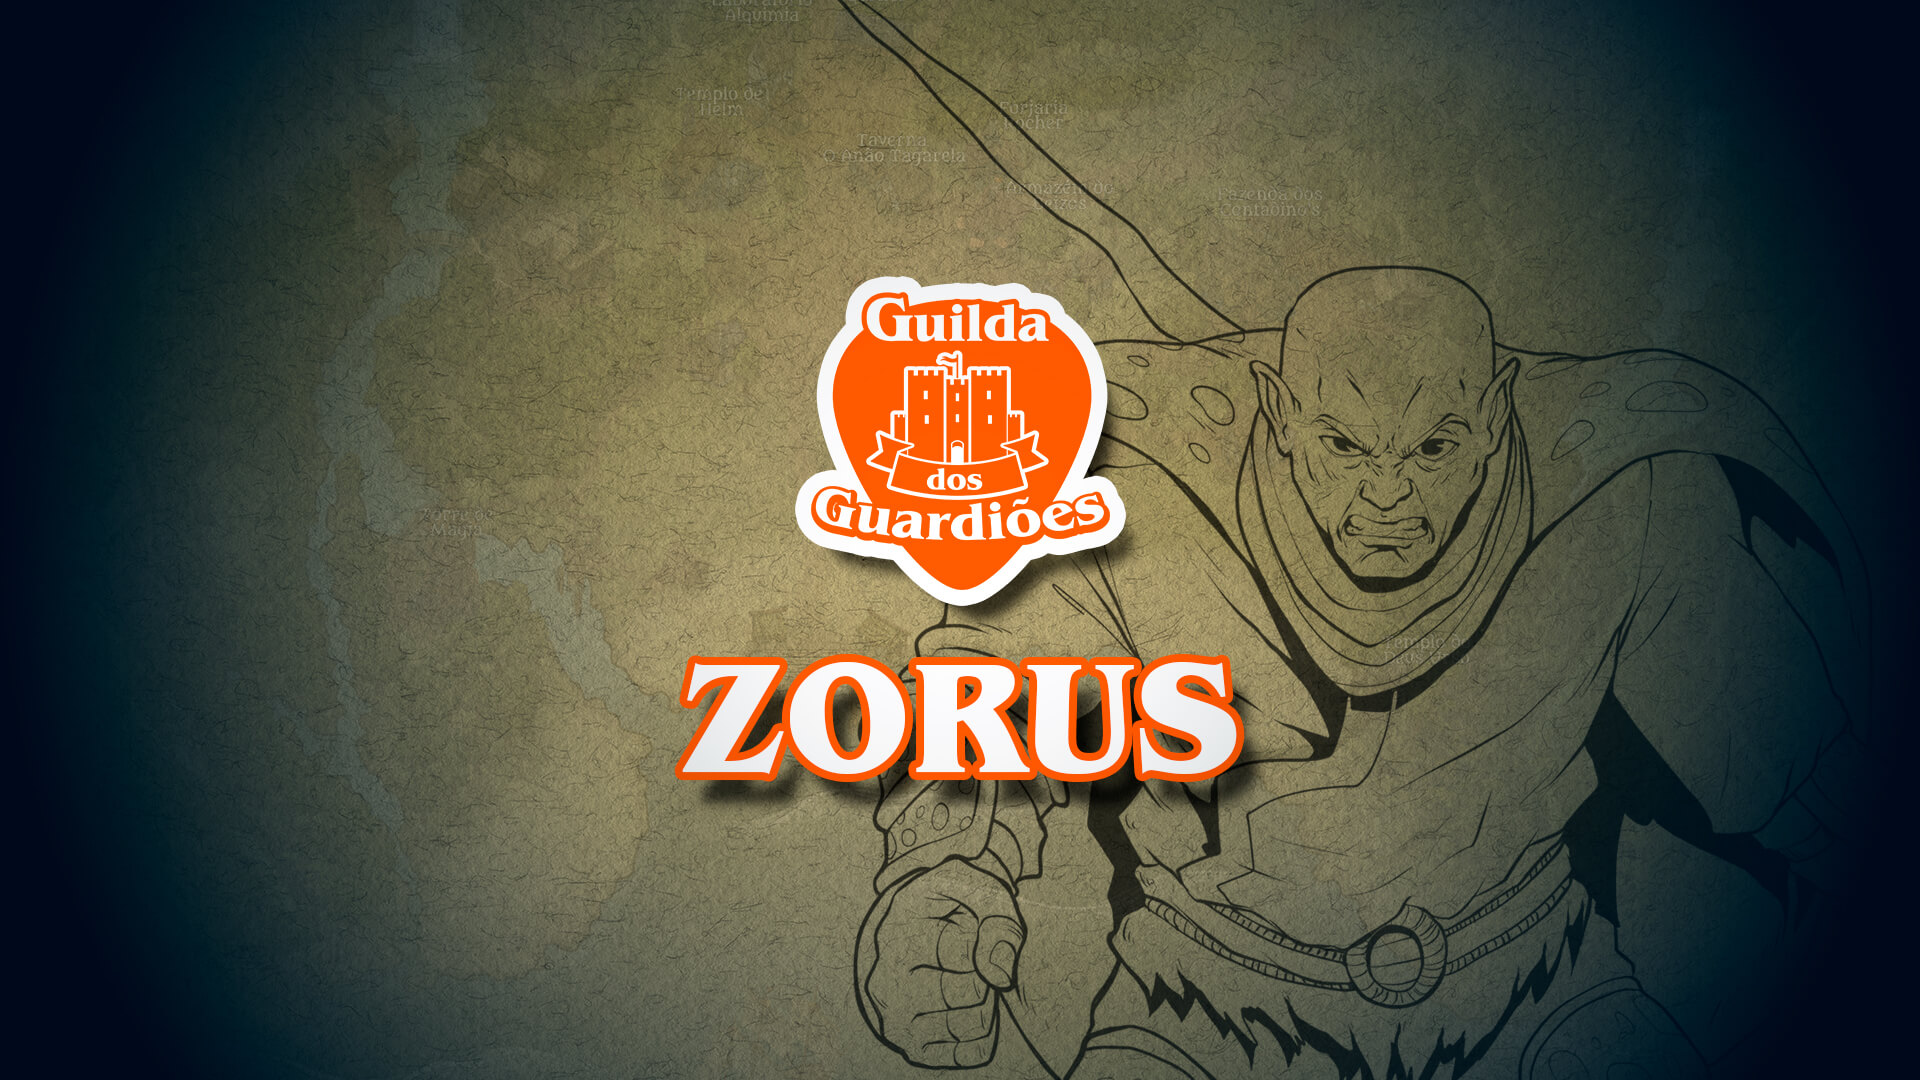 Zorus, o Desvairado – Guilda dos Guardiões – NPCS